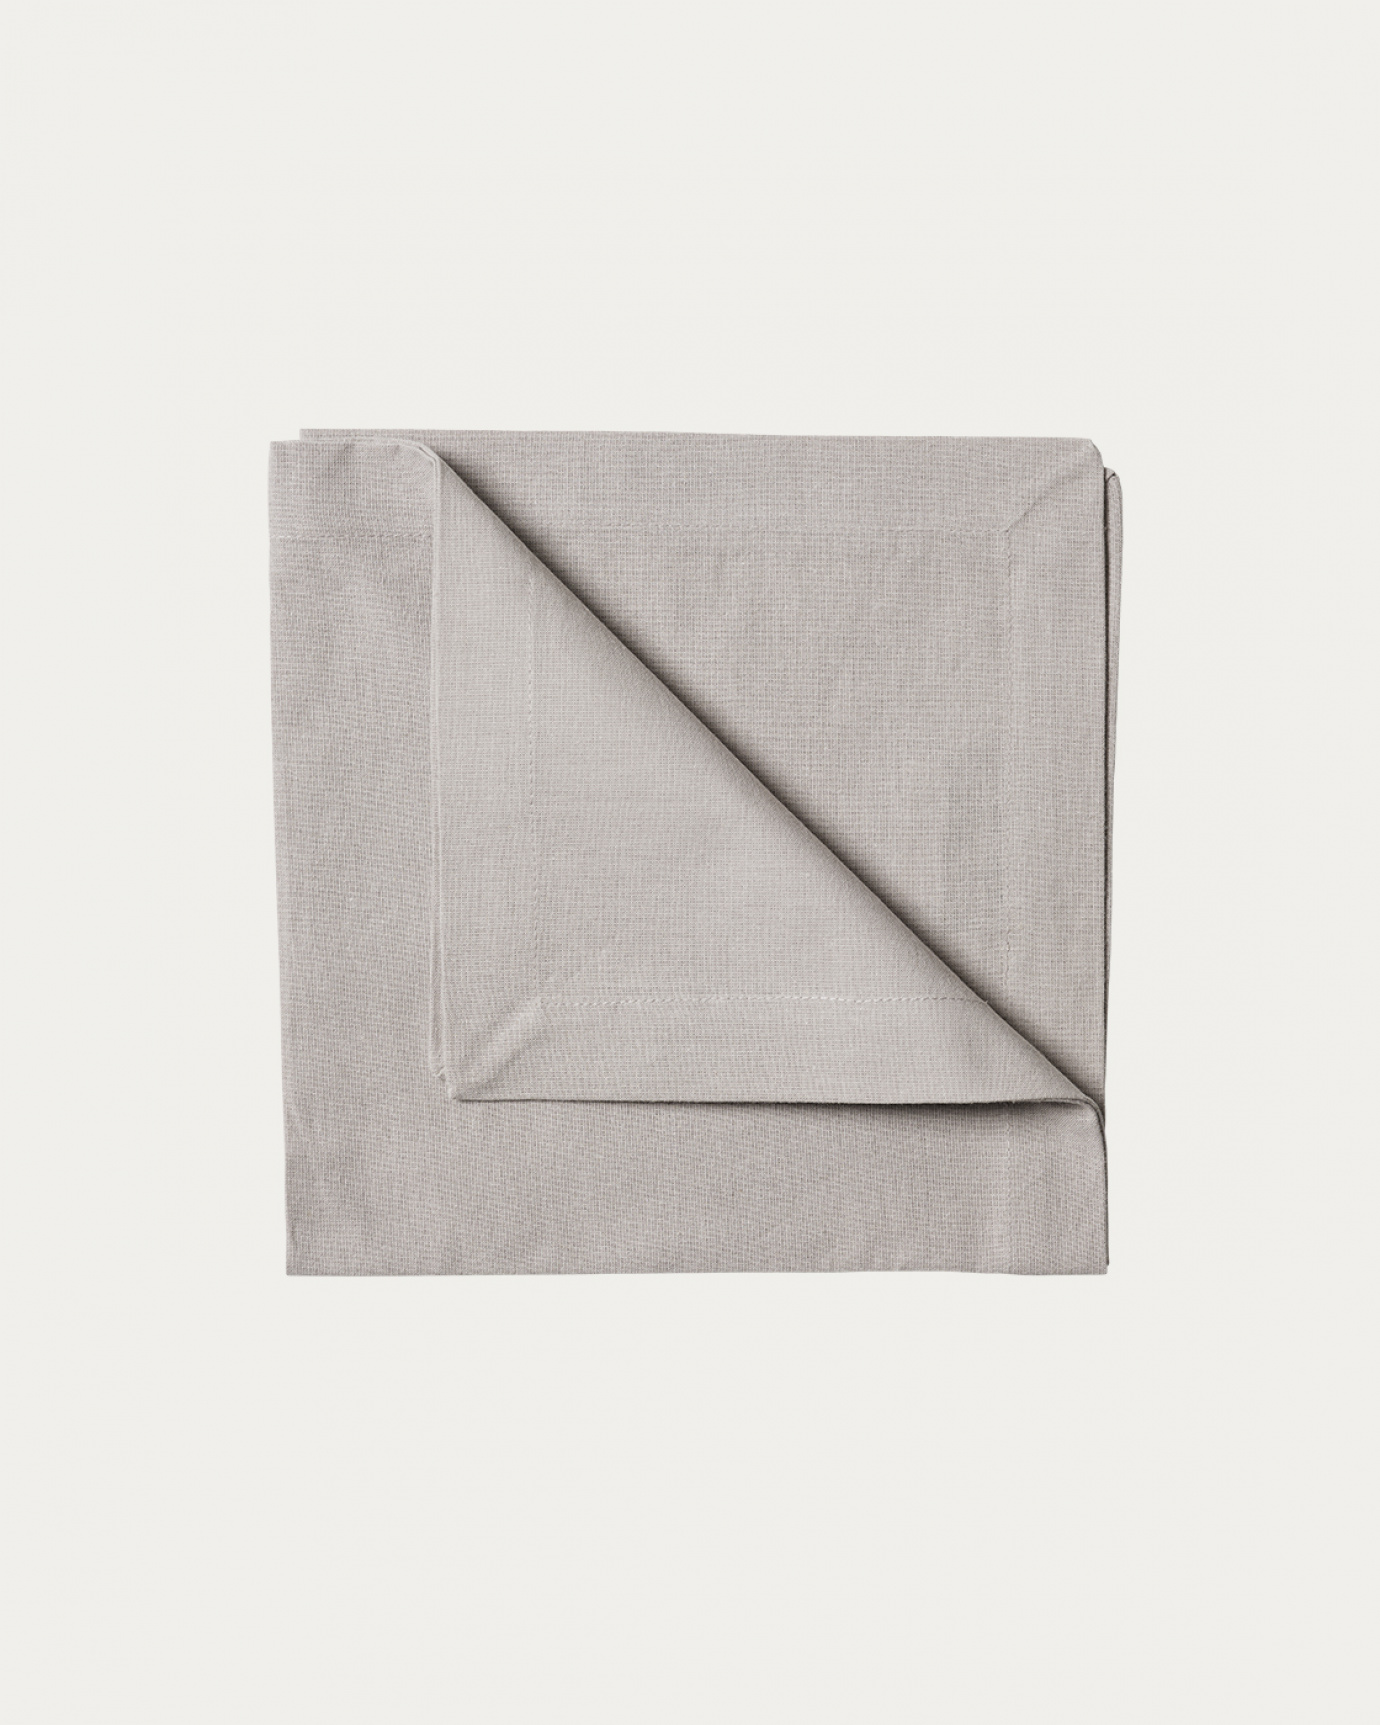 Produktbild ljusgrå ROBERT servett av mjuk bomull från LINUM DESIGN. Storlek 45x45 cm och säljs i 4 pack.